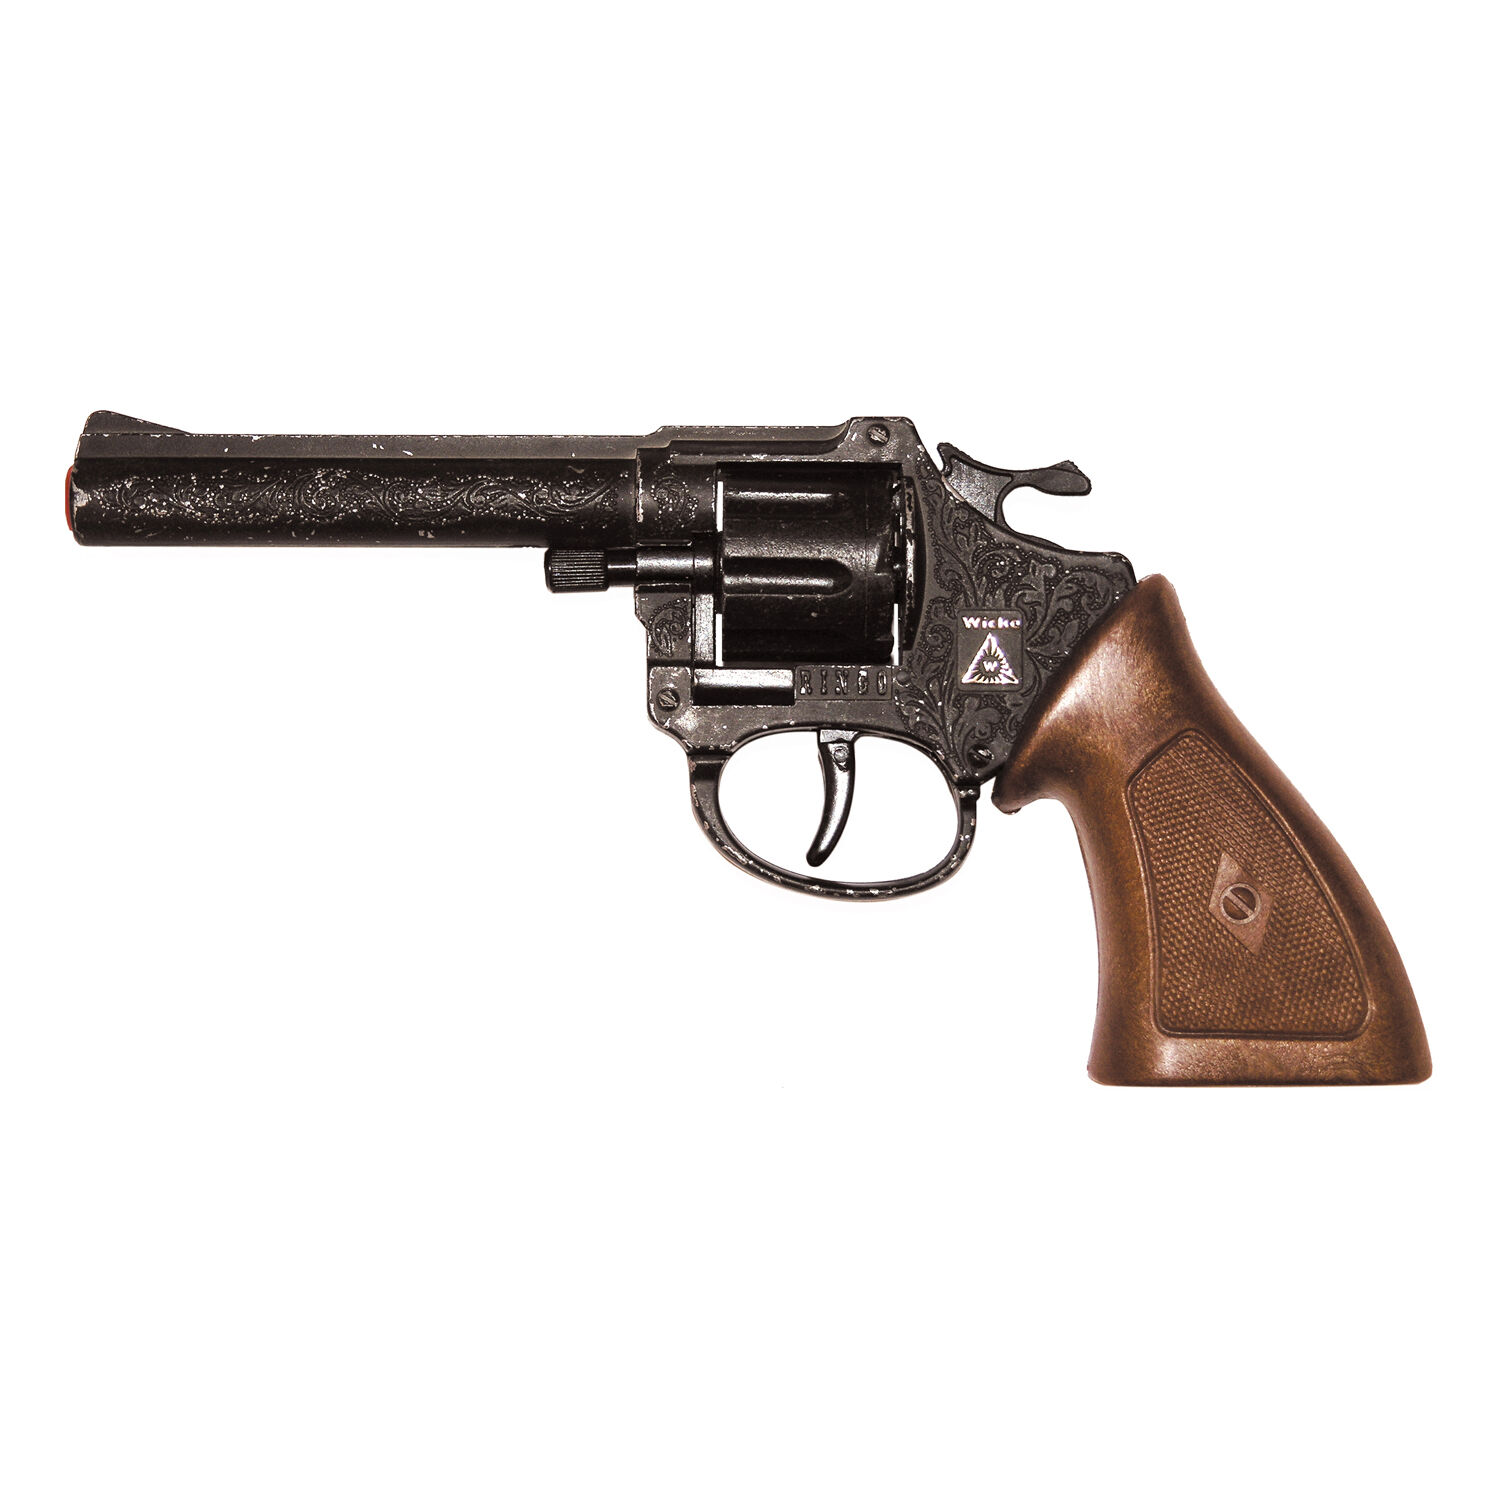 NEU 8-Schuss-Revolver Ringo antik, Kunststoff, schwarz mit braunem Handstück - Cowboy- oder Agenten-Pistole